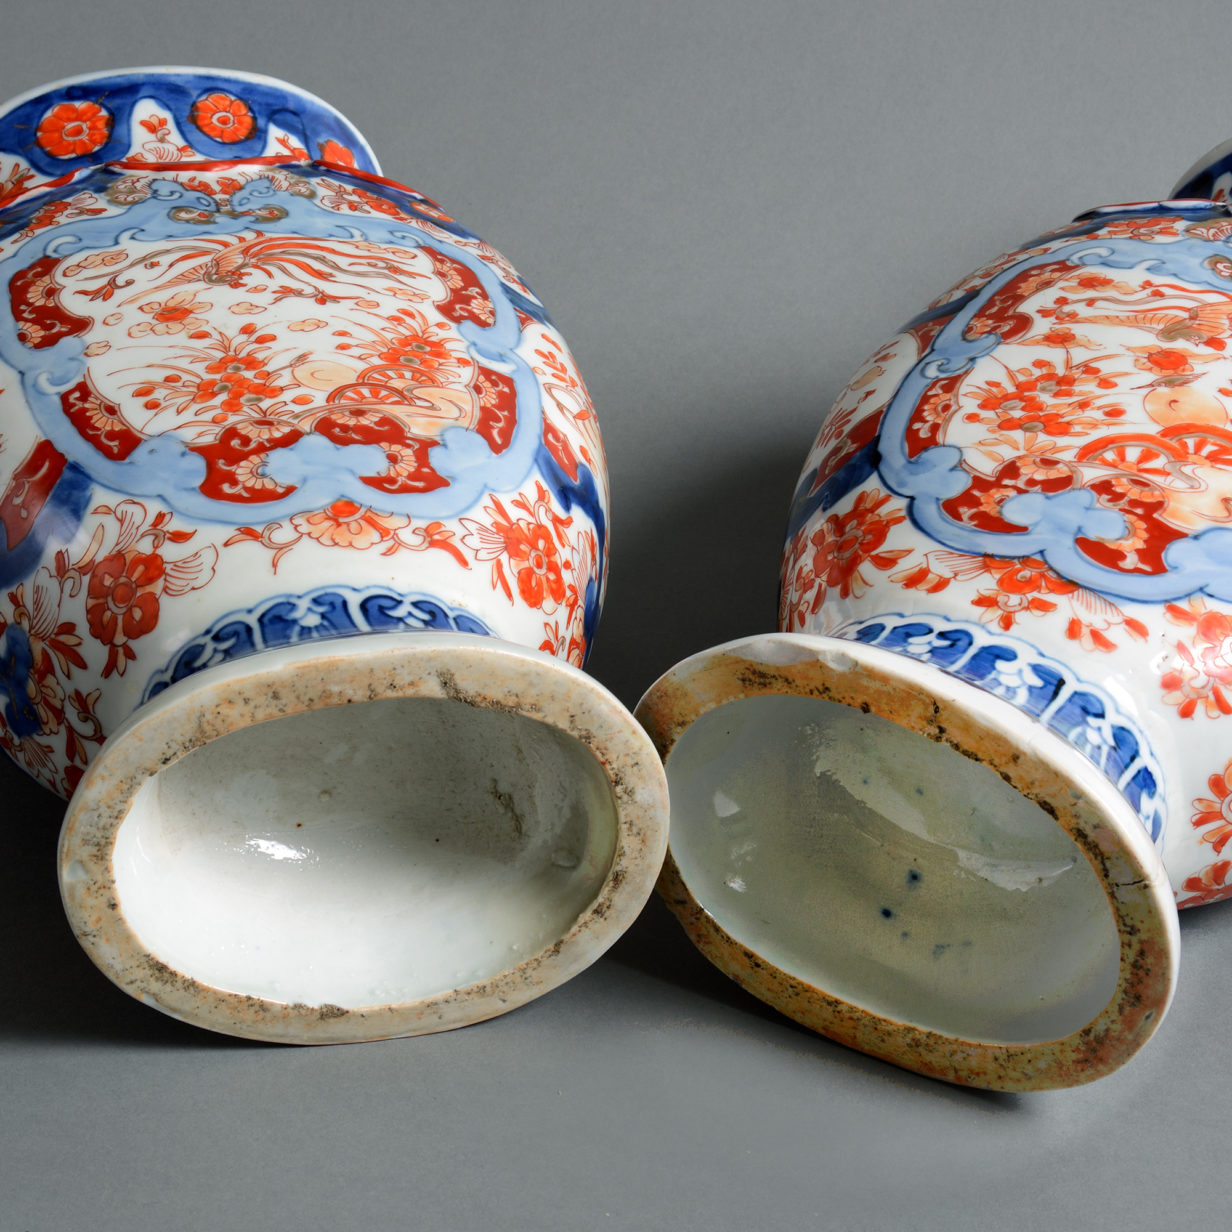 A pair of 19th century imari vases